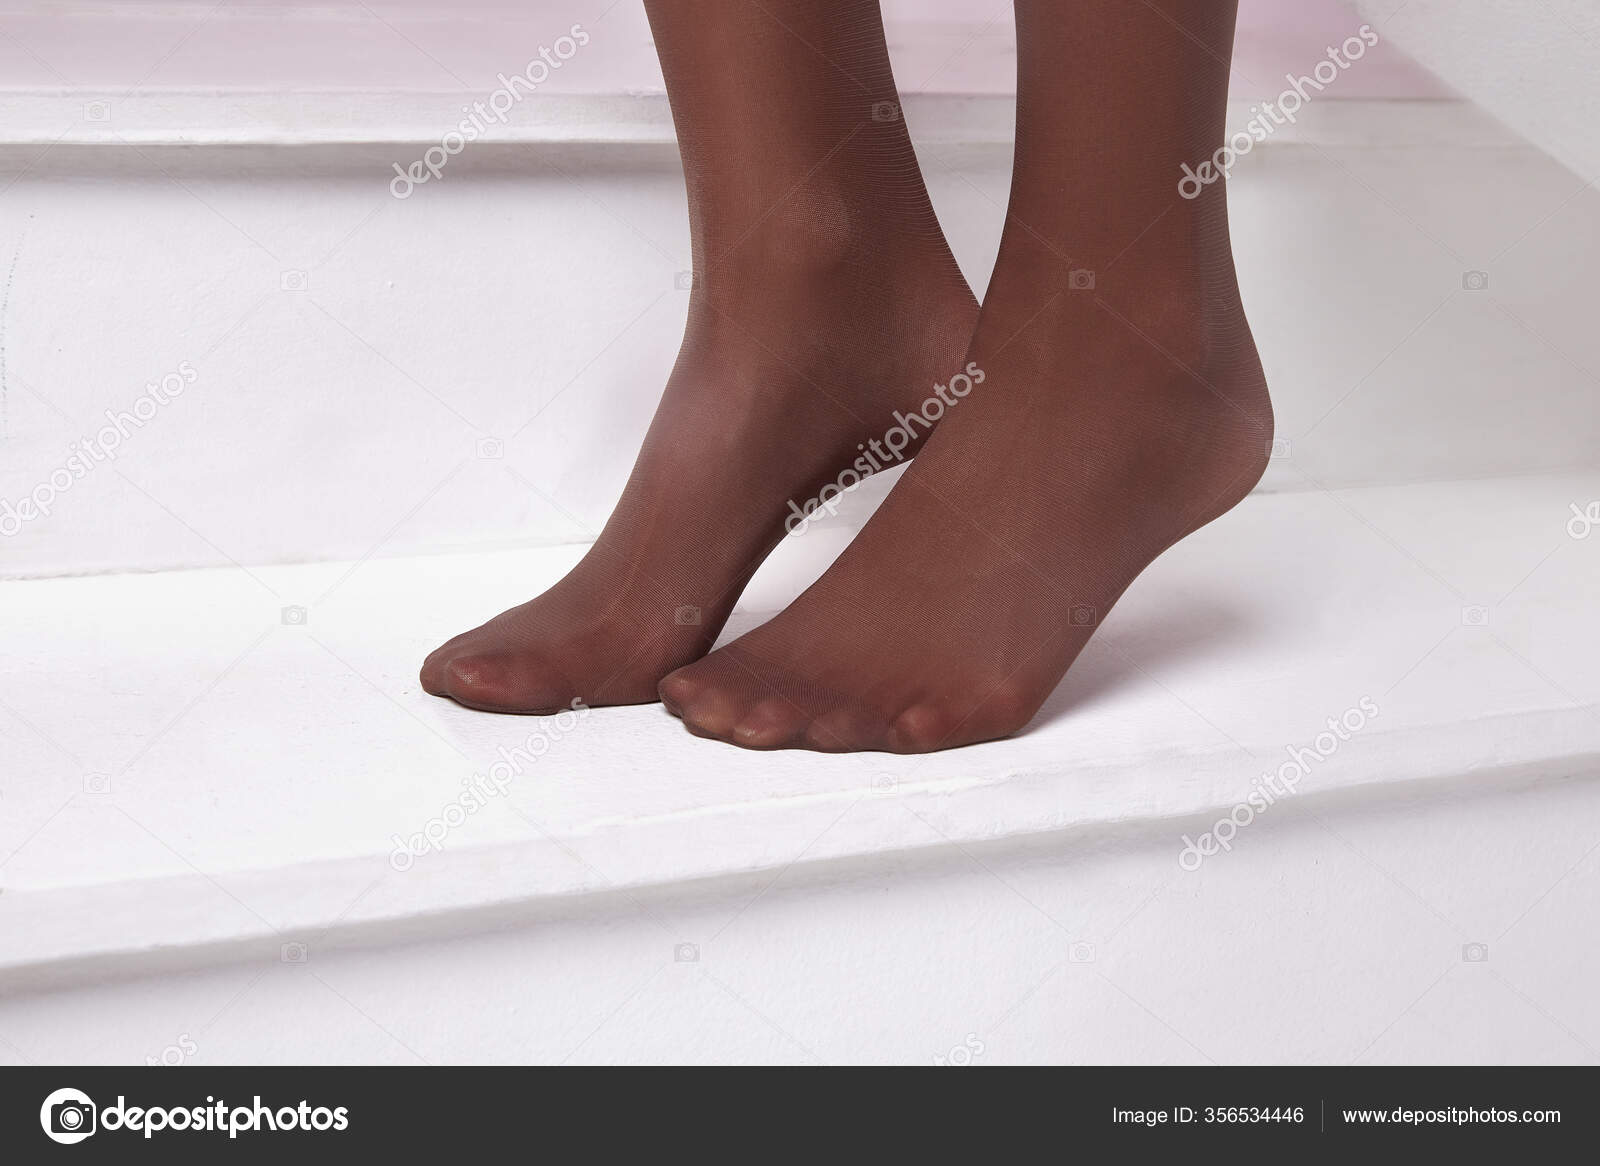 Tan Nylon Feet